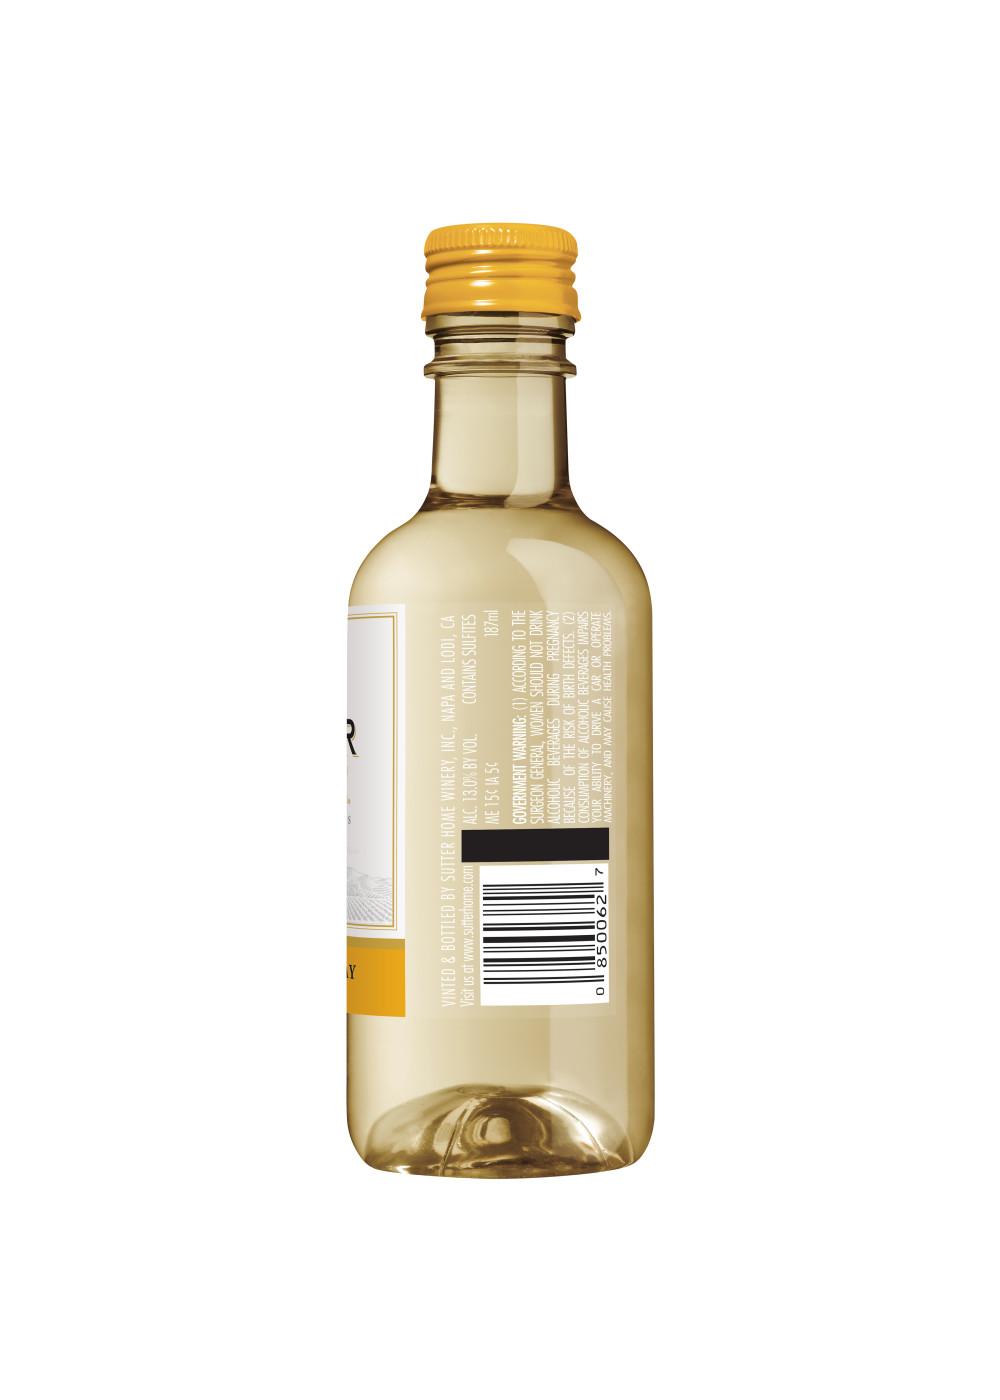 Sutter Home Family Vineyards Chardonnay White Wine 4 pk Bottles; image 5 of 8